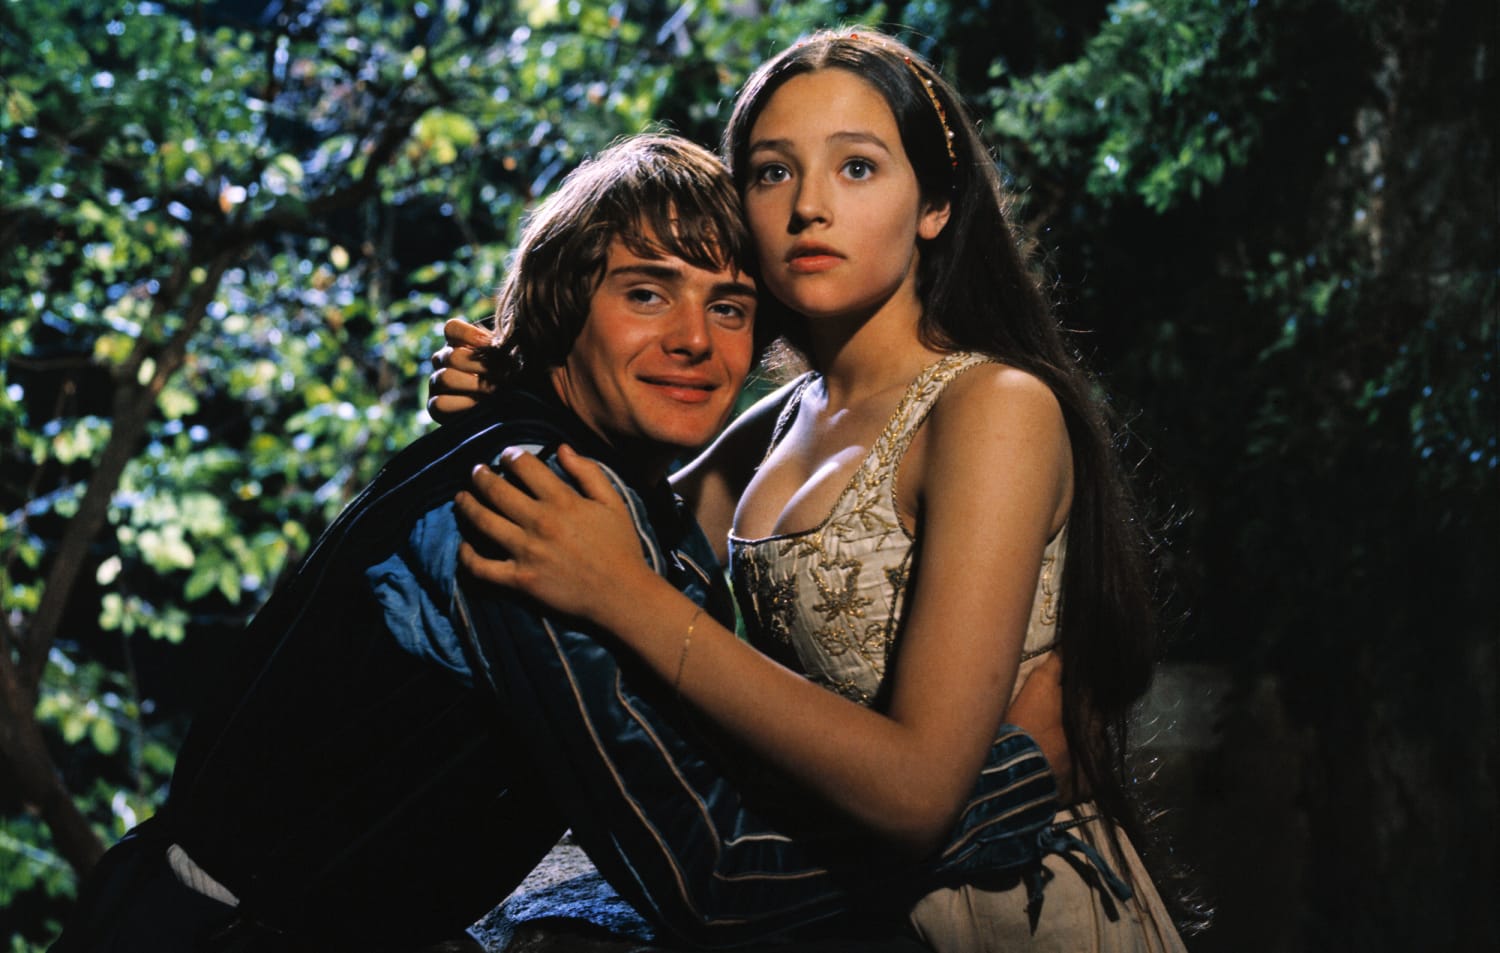 'Romeo & Juliet' stars sue over teen nude scene in 1968 film